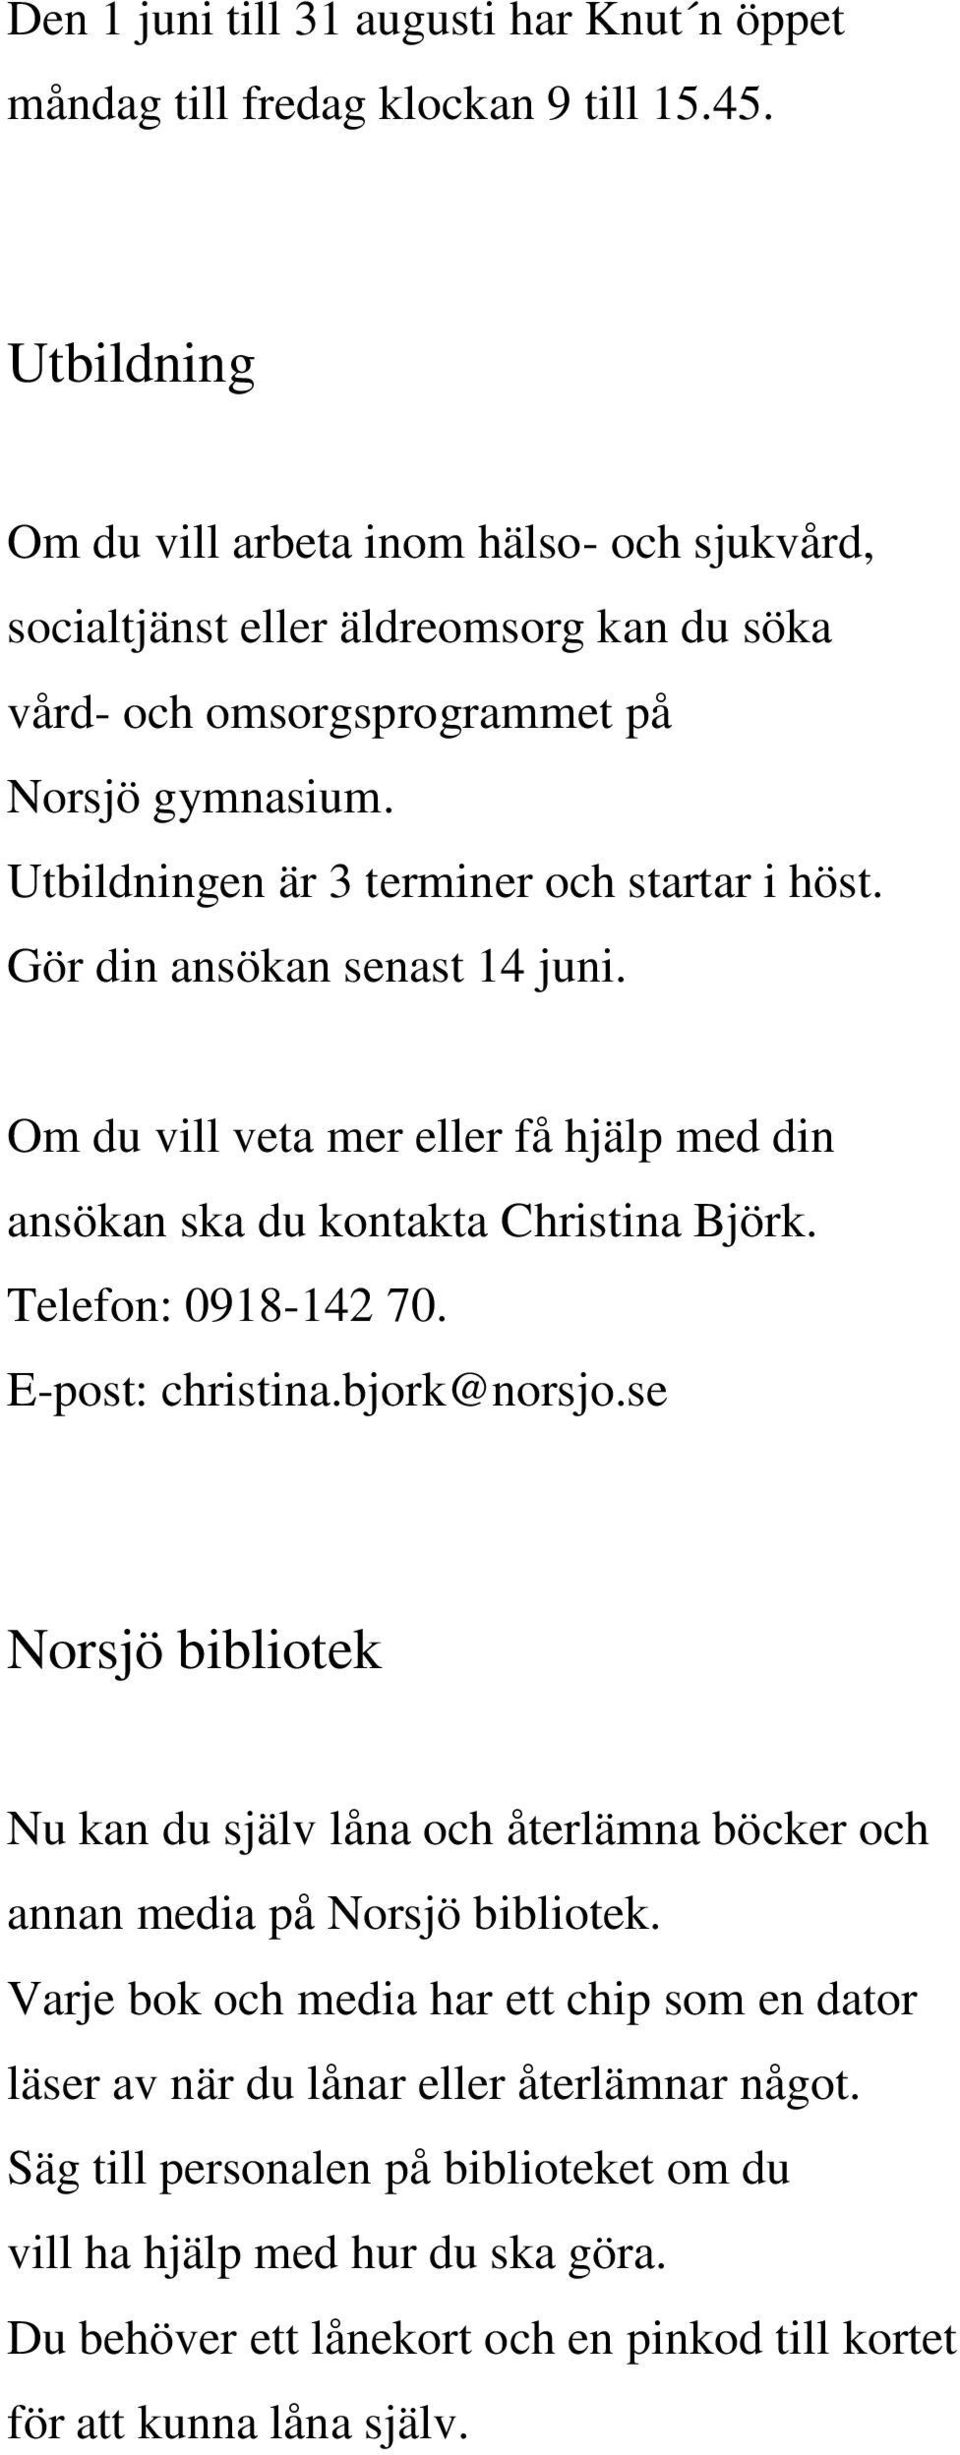 Gör din ansökan senast 14 juni. Om du vill veta mer eller få hjälp med din ansökan ska du kontakta Christina Björk. Telefon: 0918-142 70. E-post: christina.bjork@norsjo.